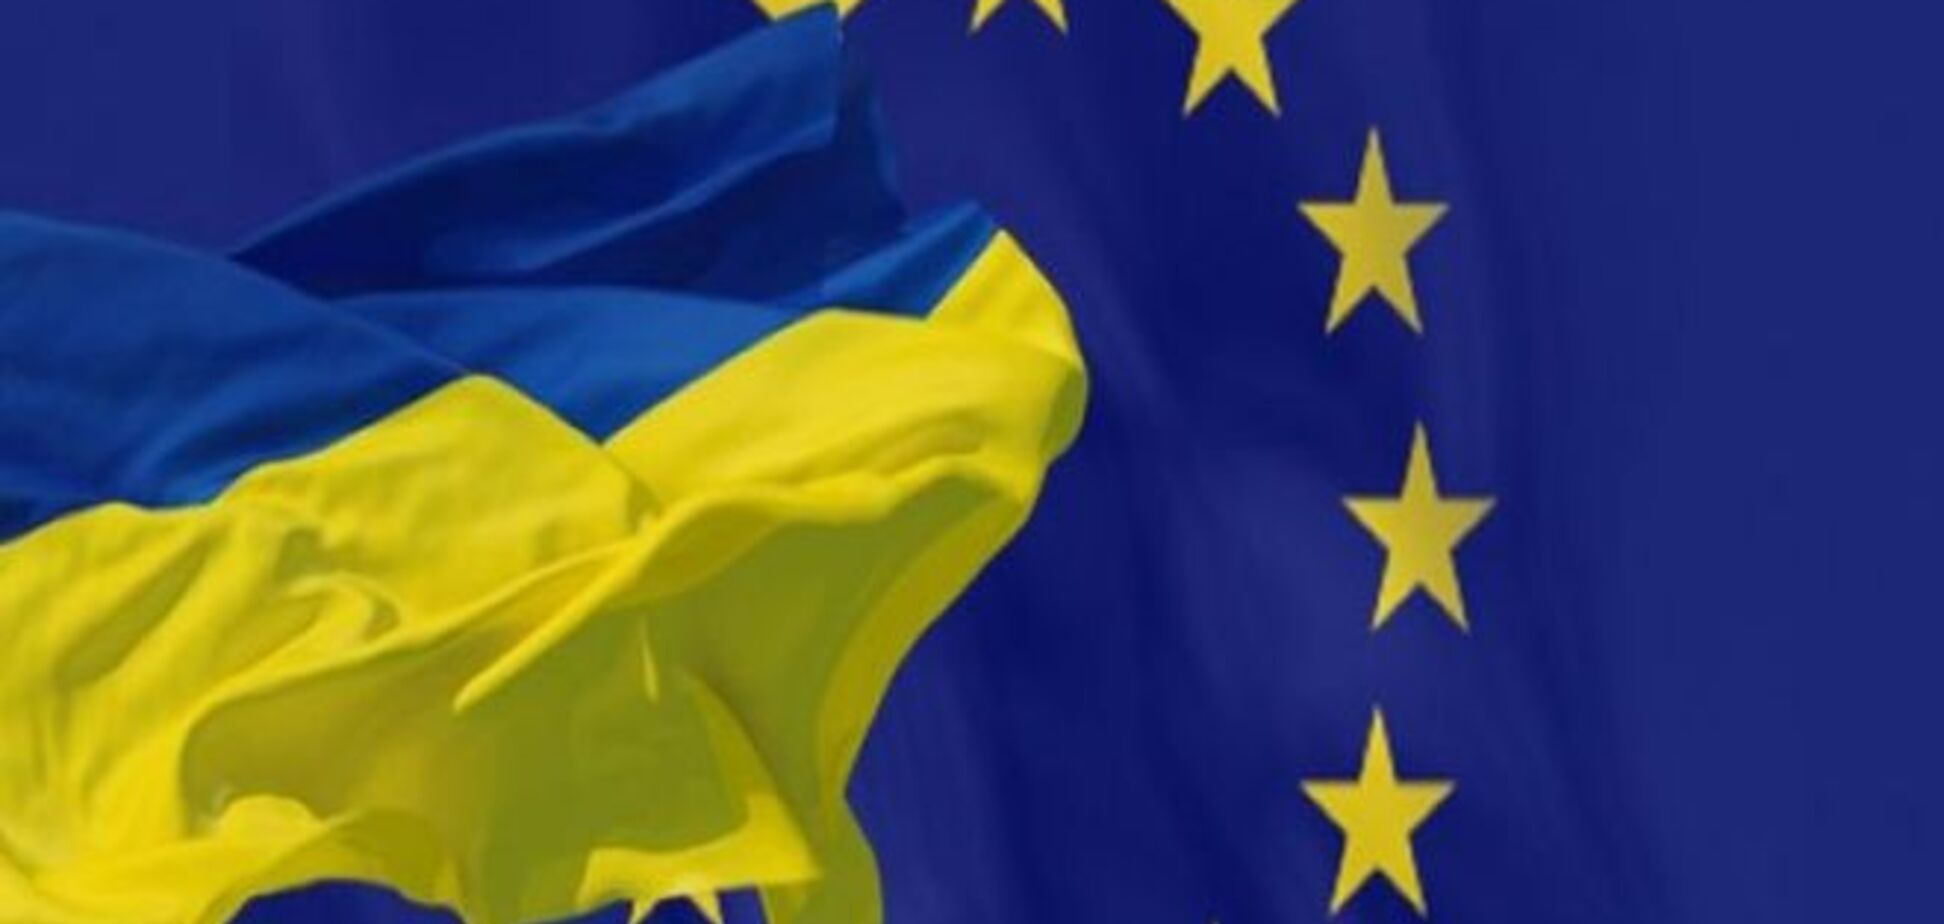 Подписание Соглашения об ассоциации с ЕС 27 июня укрепит суверенитет Украины - Климкин